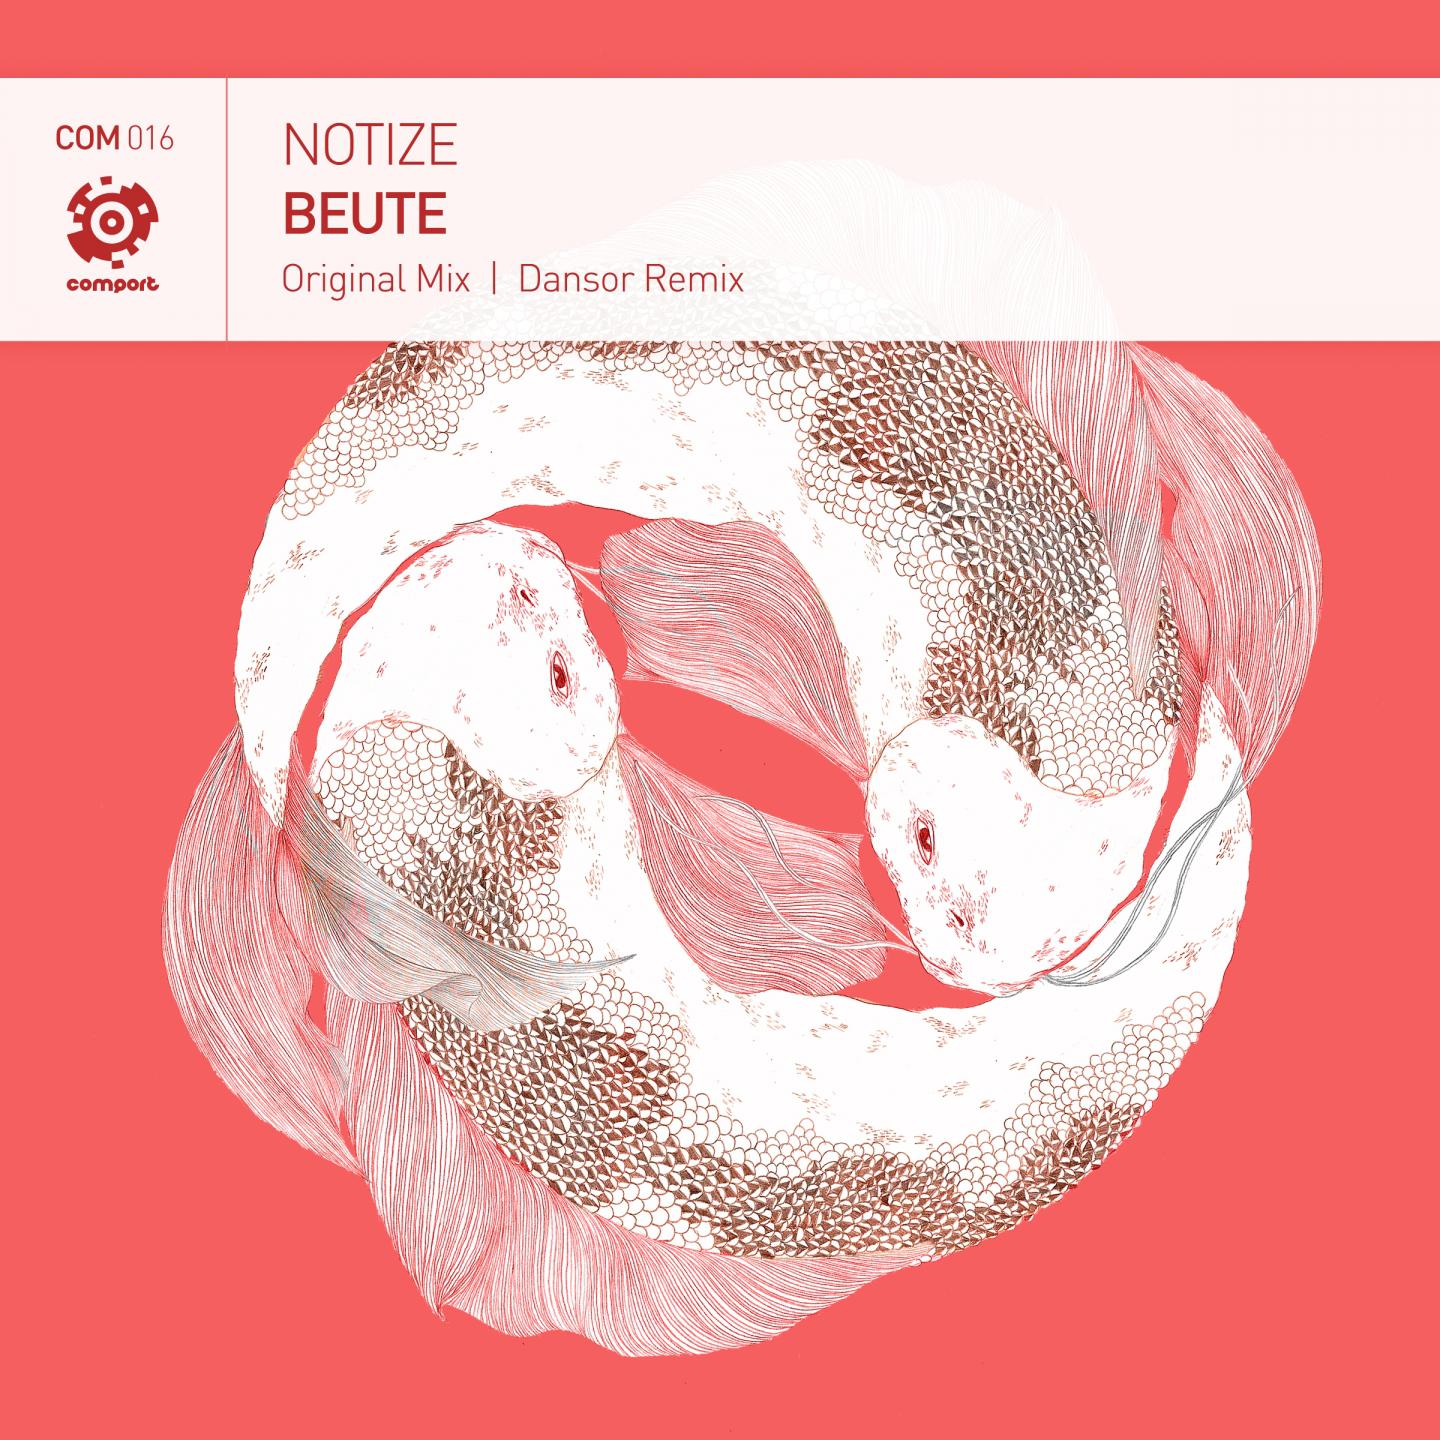 Beute (Dansor Remix)